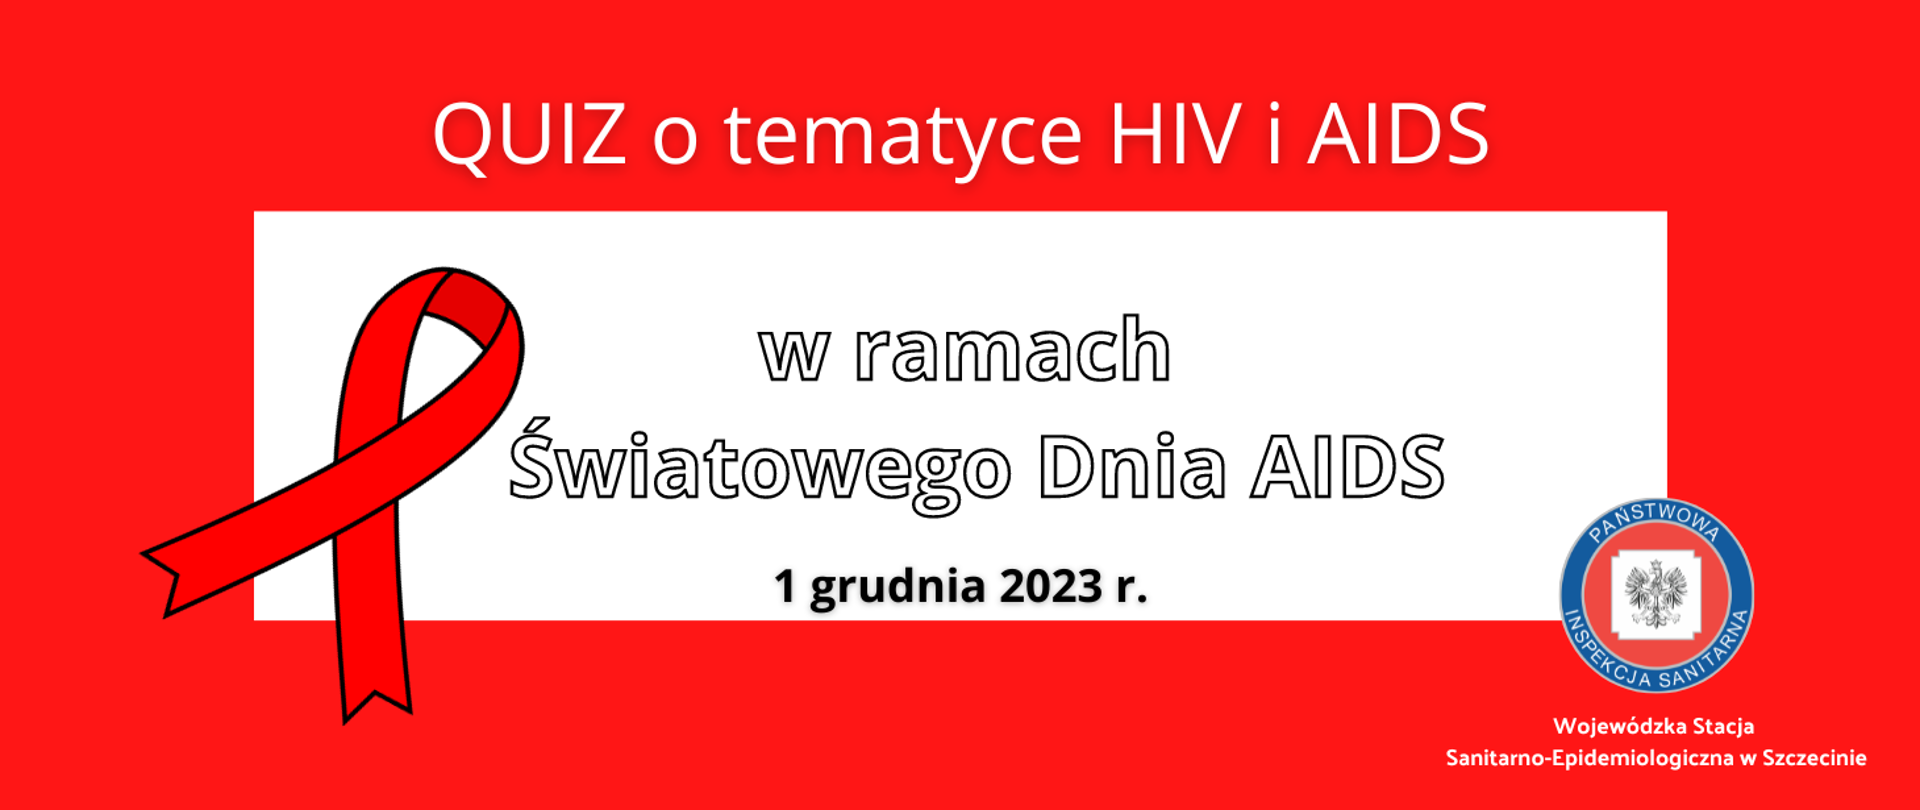 1 grudnia test nt. HIV – Qiuz o tematyce HIV i ADIS w ramach Światowego dnia AIDS 1 grudnia 2023 r. Wojewódzka Stacja Sanitarno-Epidemiologiczna w Szczecinie.